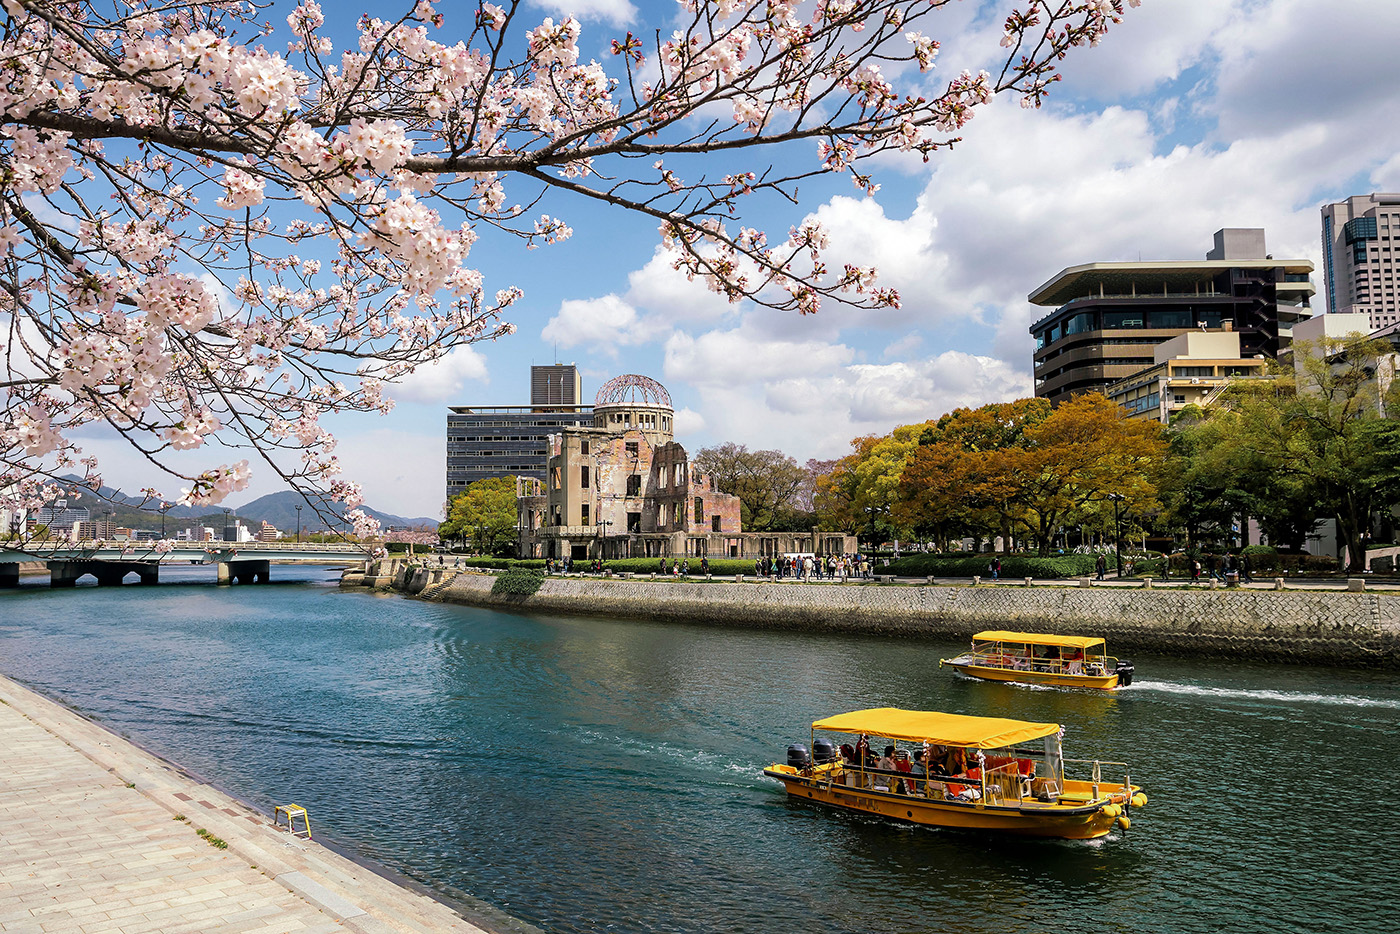 I fiori di ciliegio di Kobe aggiungono un tocco di delicatezza al Memoriale della Pace di Hiroshima, creando un'immagine semplice ma evocativa